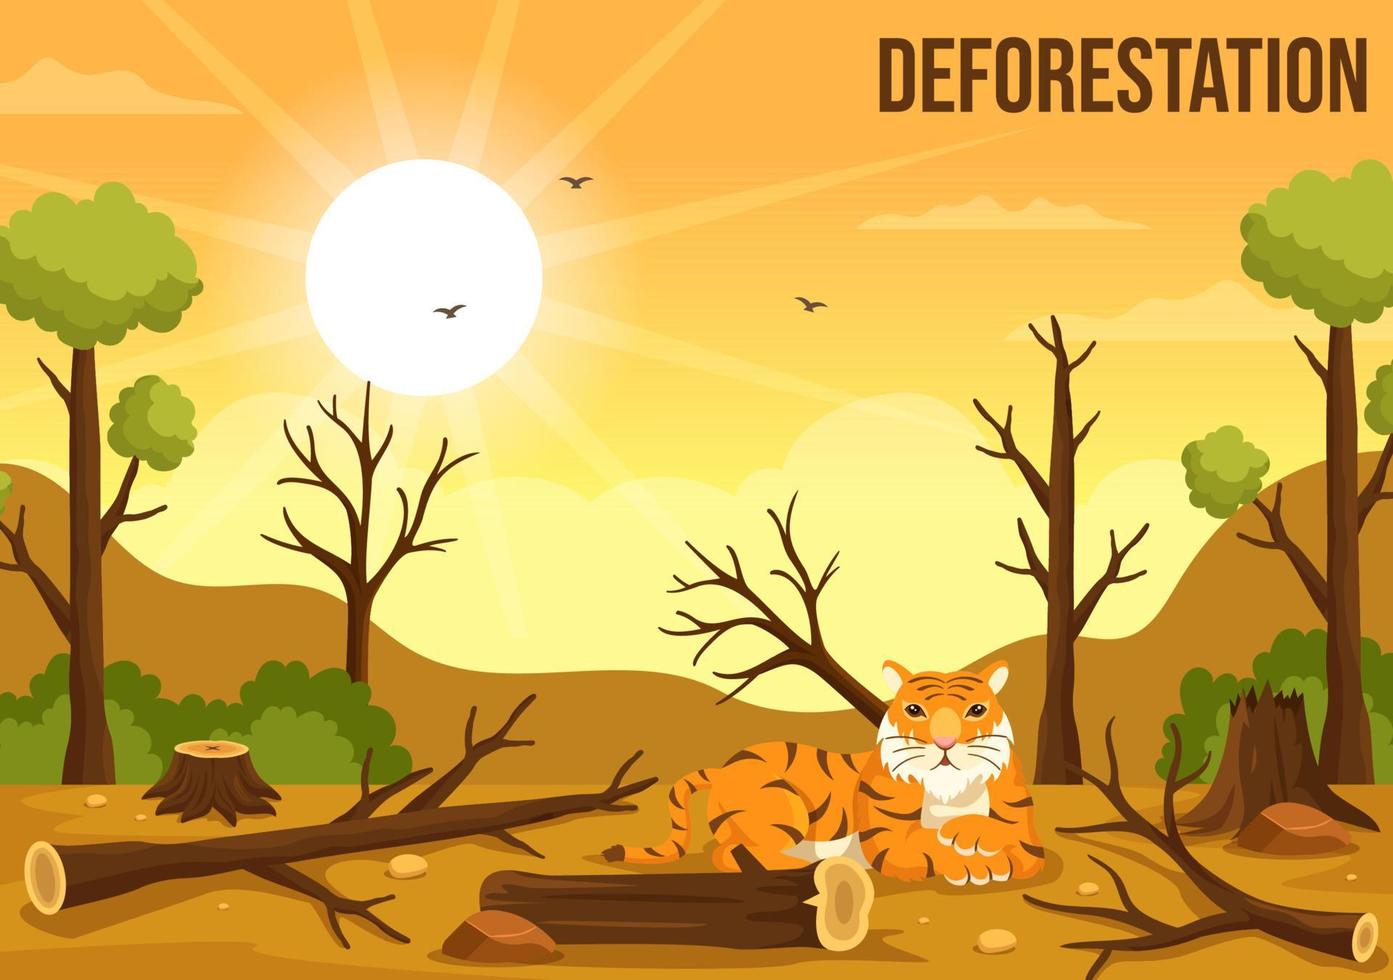 avskogning illustration med träd i de fällda skog och brinnande in i förorening orsakar de utdöende av djur i tecknad serie hand dragen mallar vektor